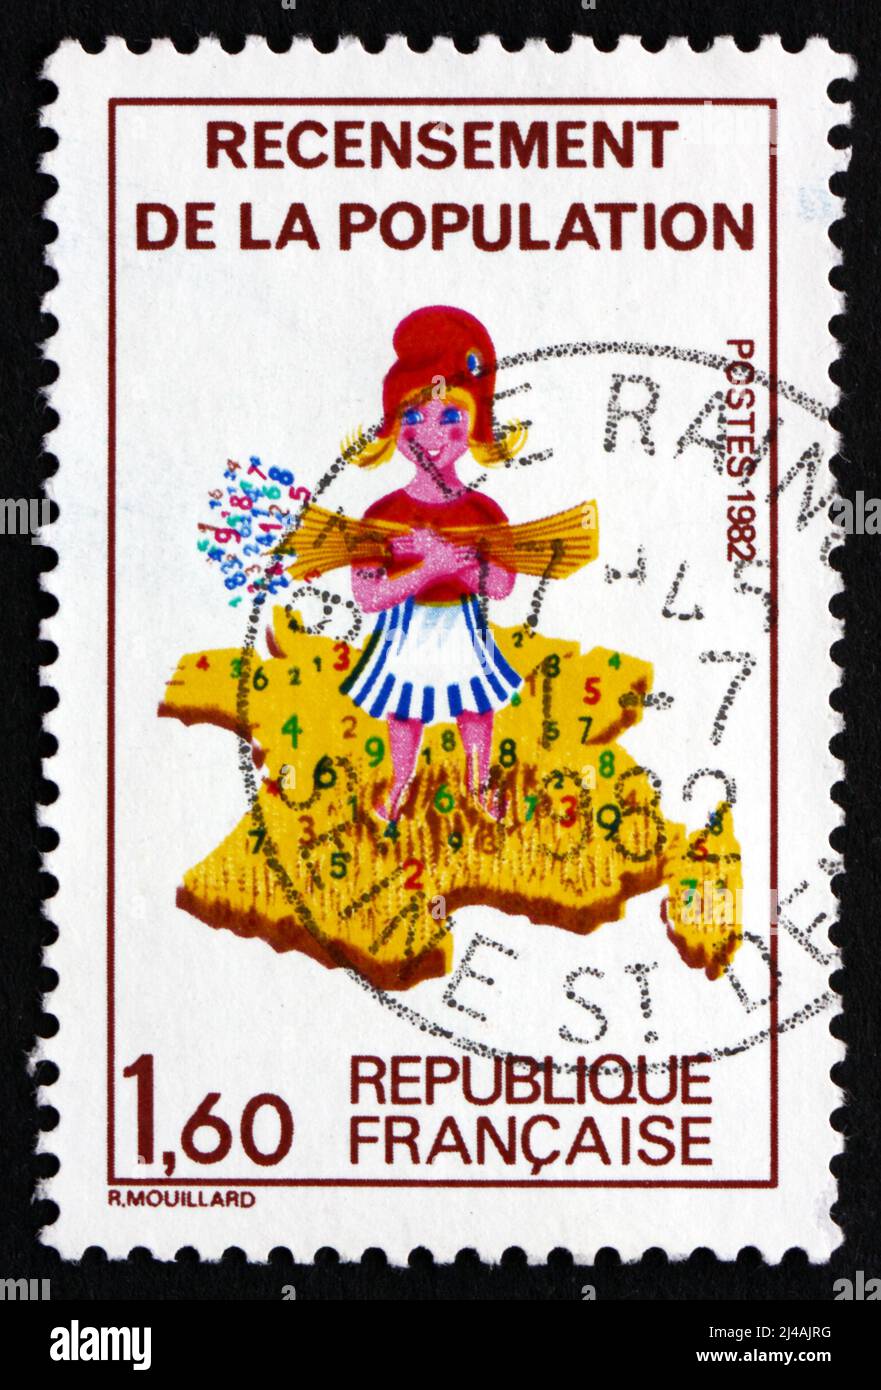 FRANCE - VERS 1982 : un timbre imprimé en France montre Girl et la carte de France, Recensement national, vers 1982 Banque D'Images